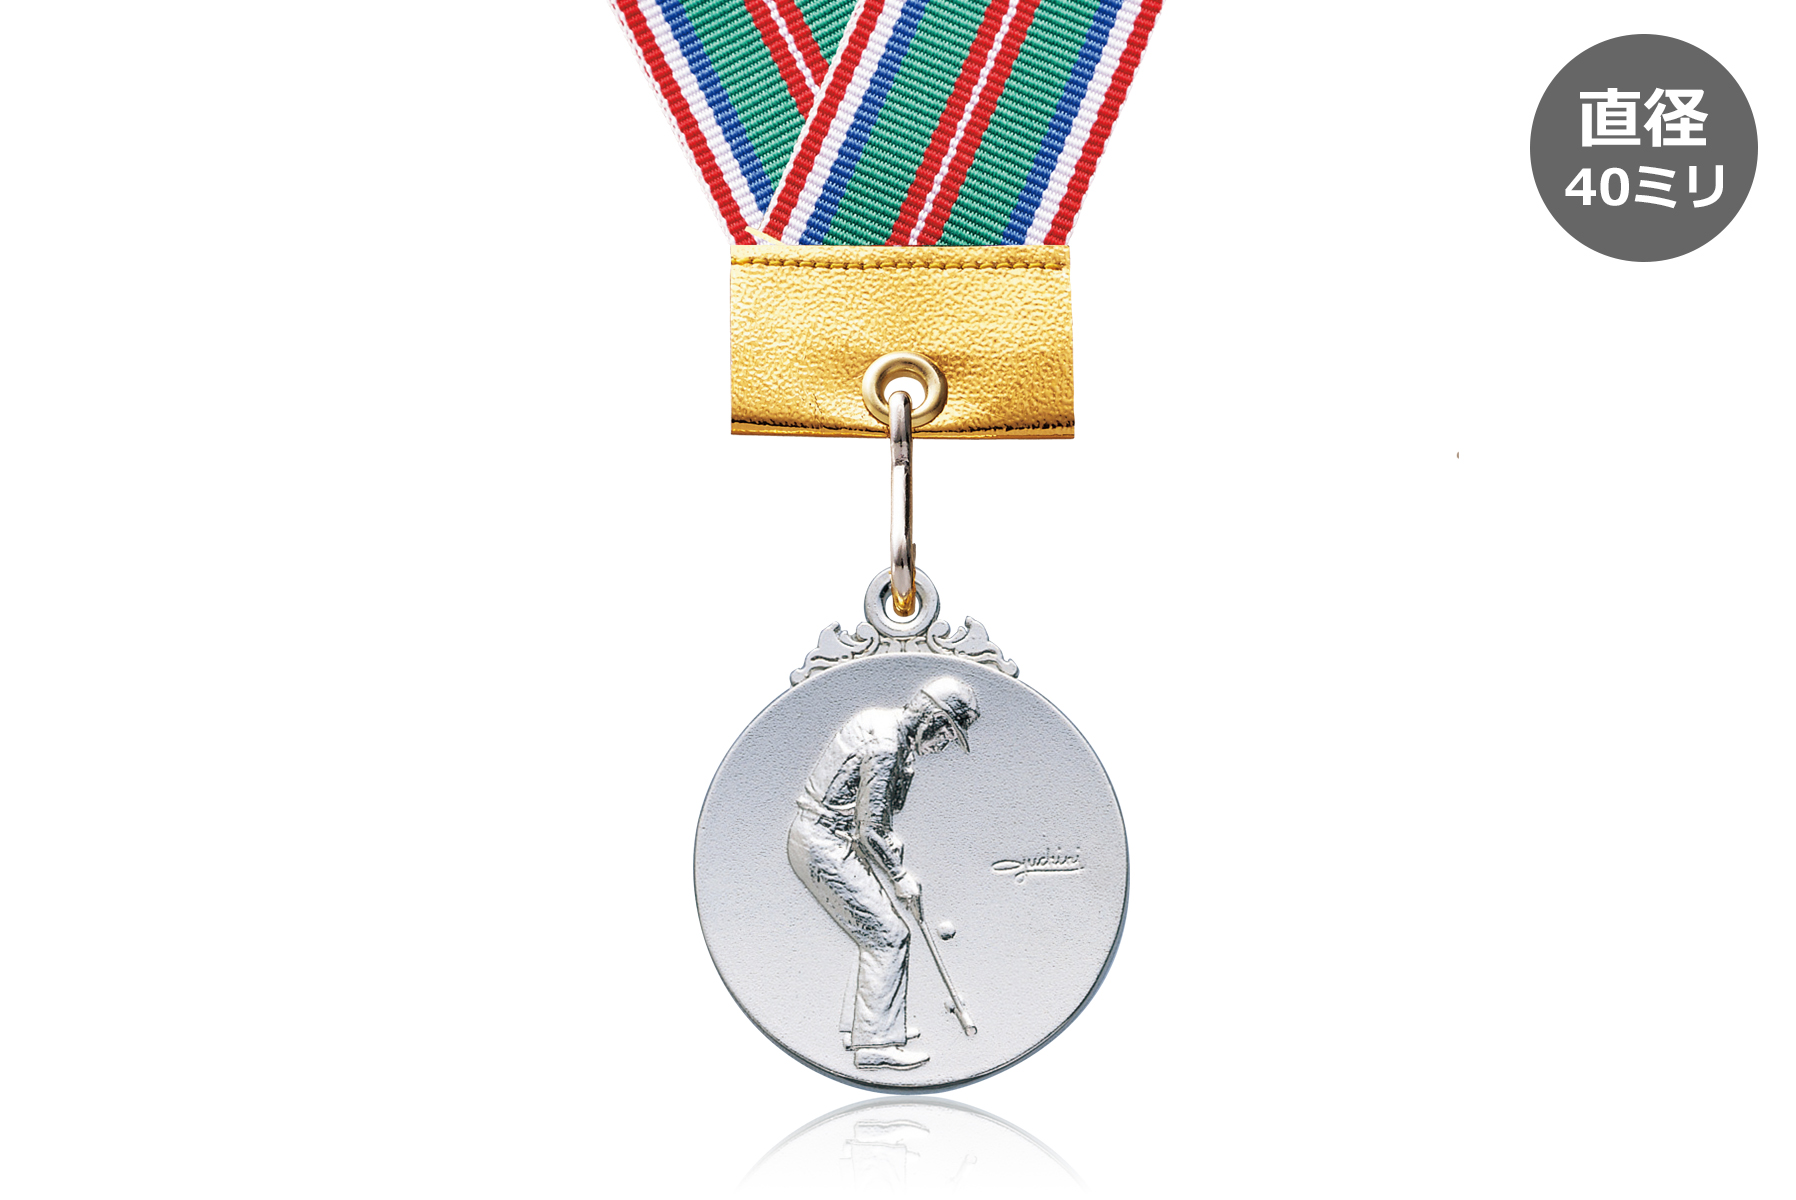 ゲートボールカテゴリーで人気上位の表彰メダル JW-40Z-gateball